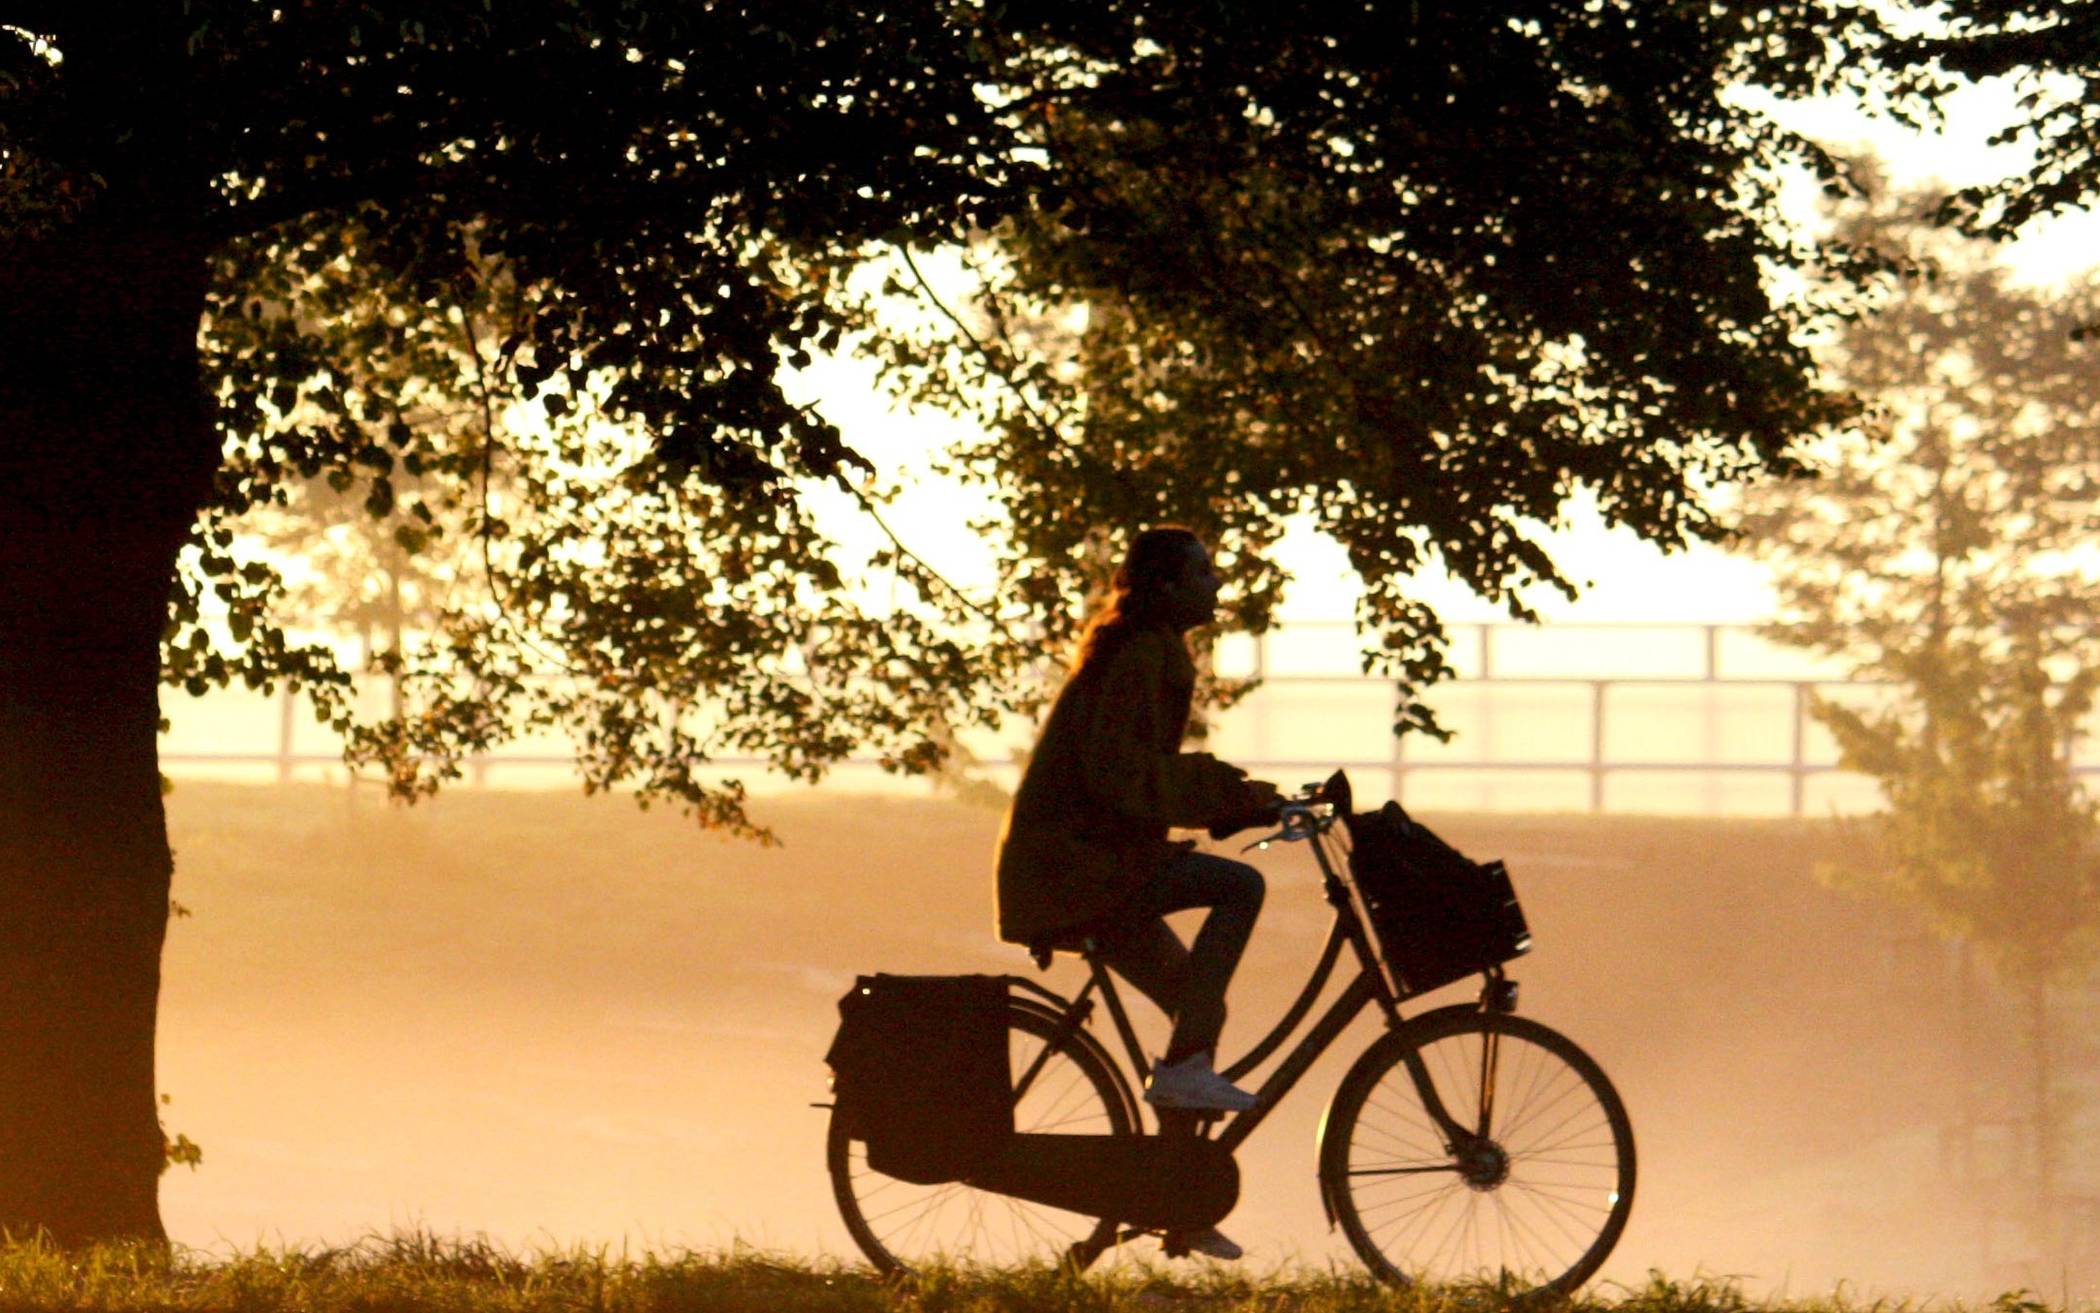   Mit dem Rad zur Arbeit - in puncto fahrraddfreundliche Unternehmen hat Düsseldorf laut dem ADFC Nachholbedarf.    